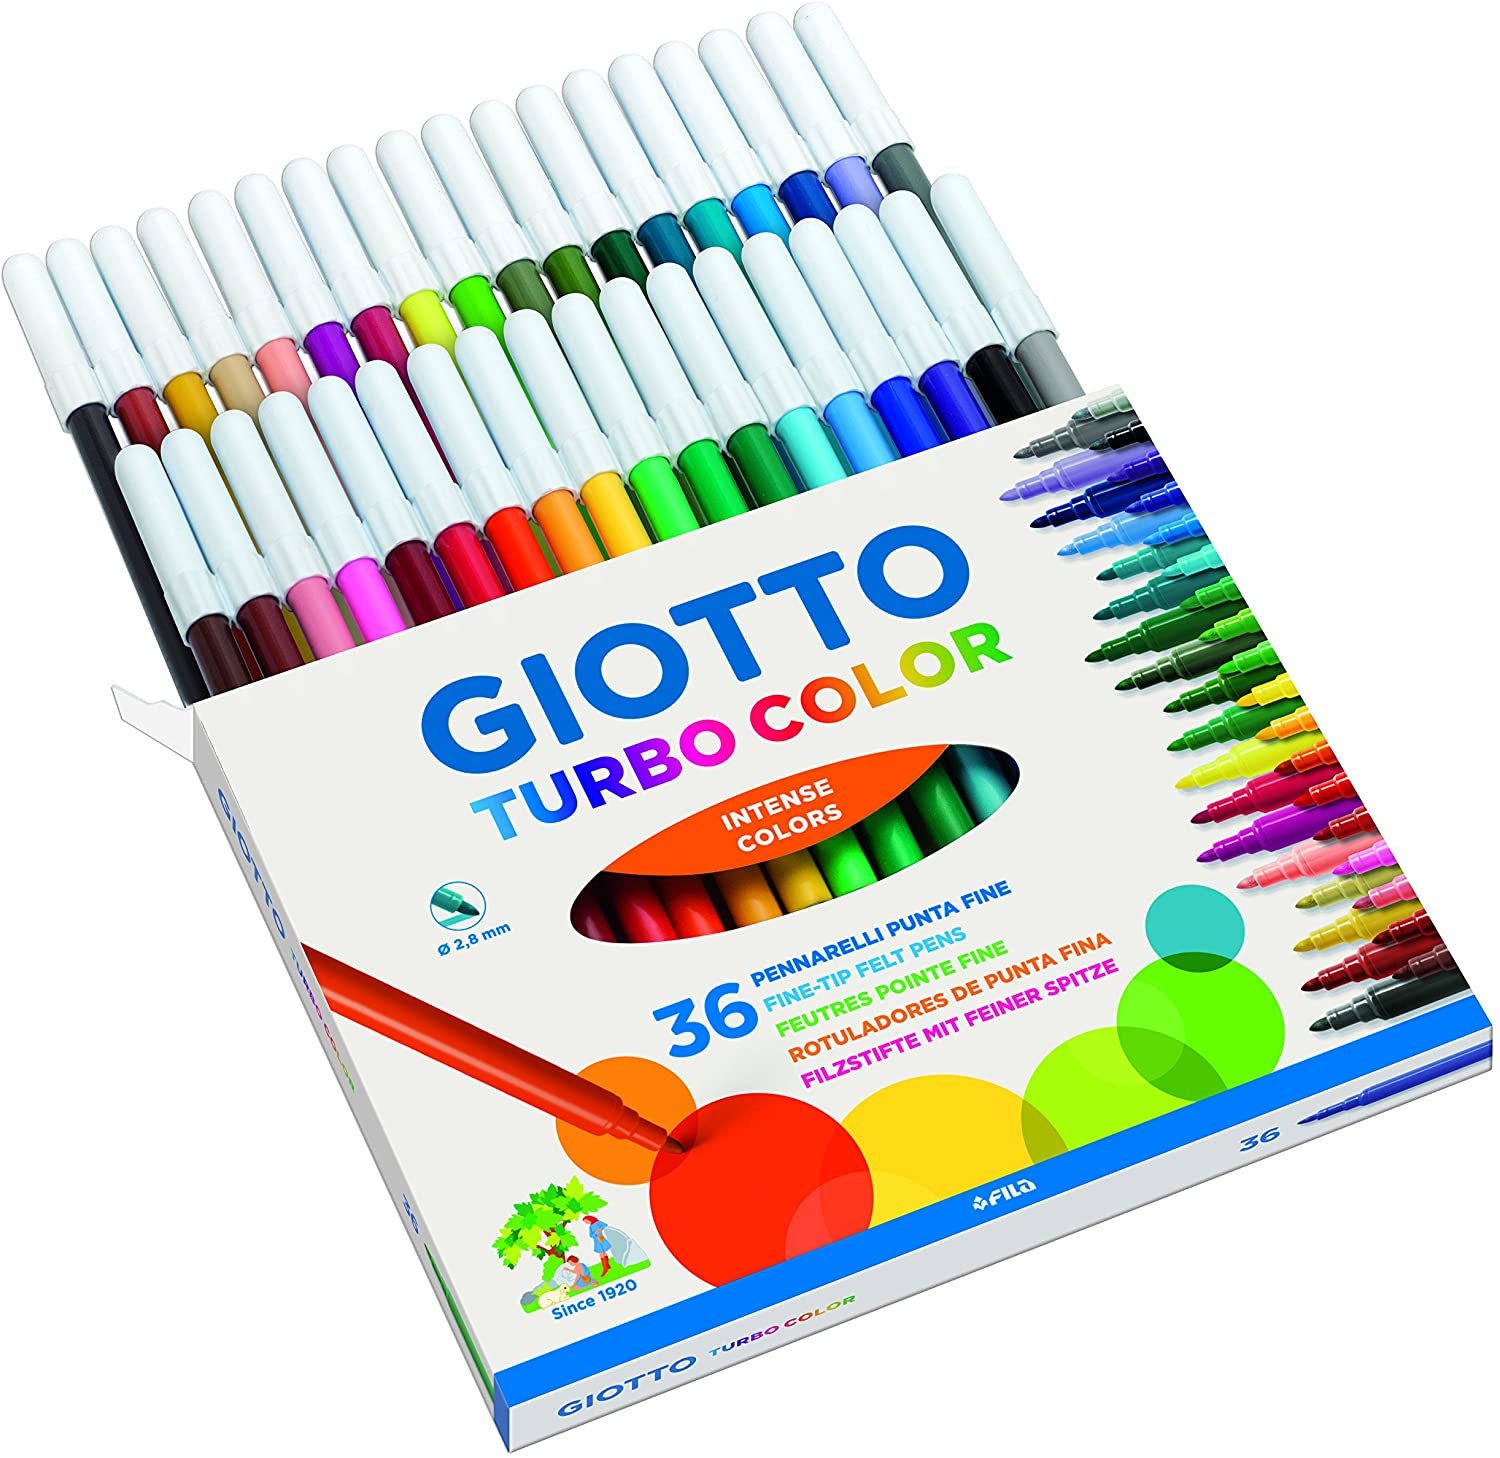 Giotto Turbo Color pennarelli in astuccio da 36 colori